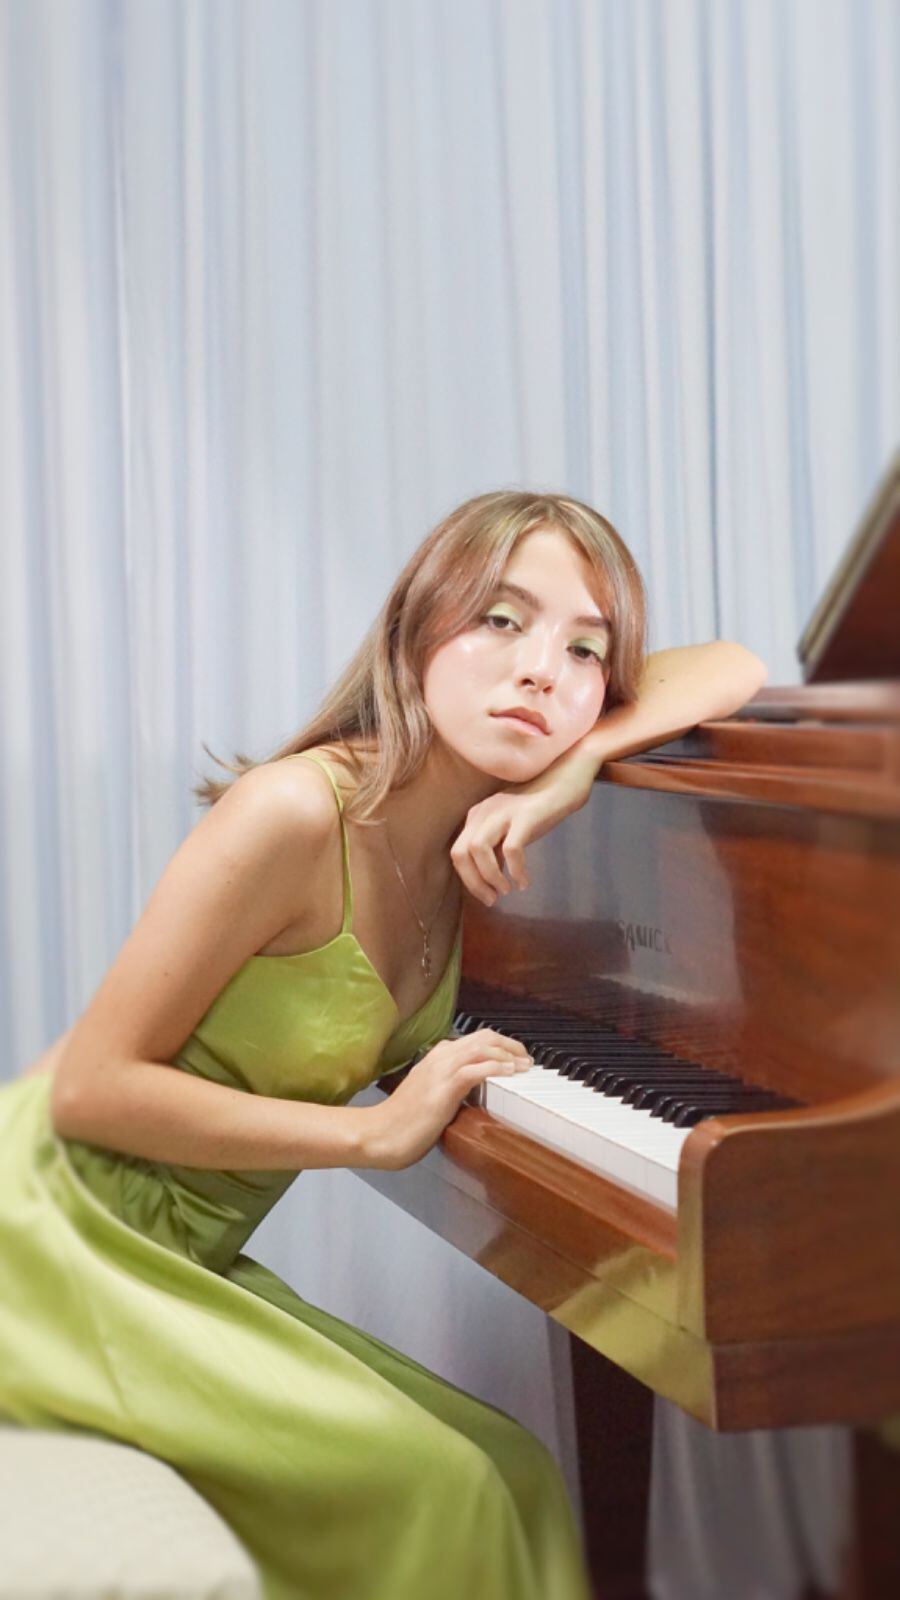 Fátima Carvajal estudia Piano clásico pero también es apasionada de la música popular y de los musicales. Foto: Cortesía Escuela Superior de Música